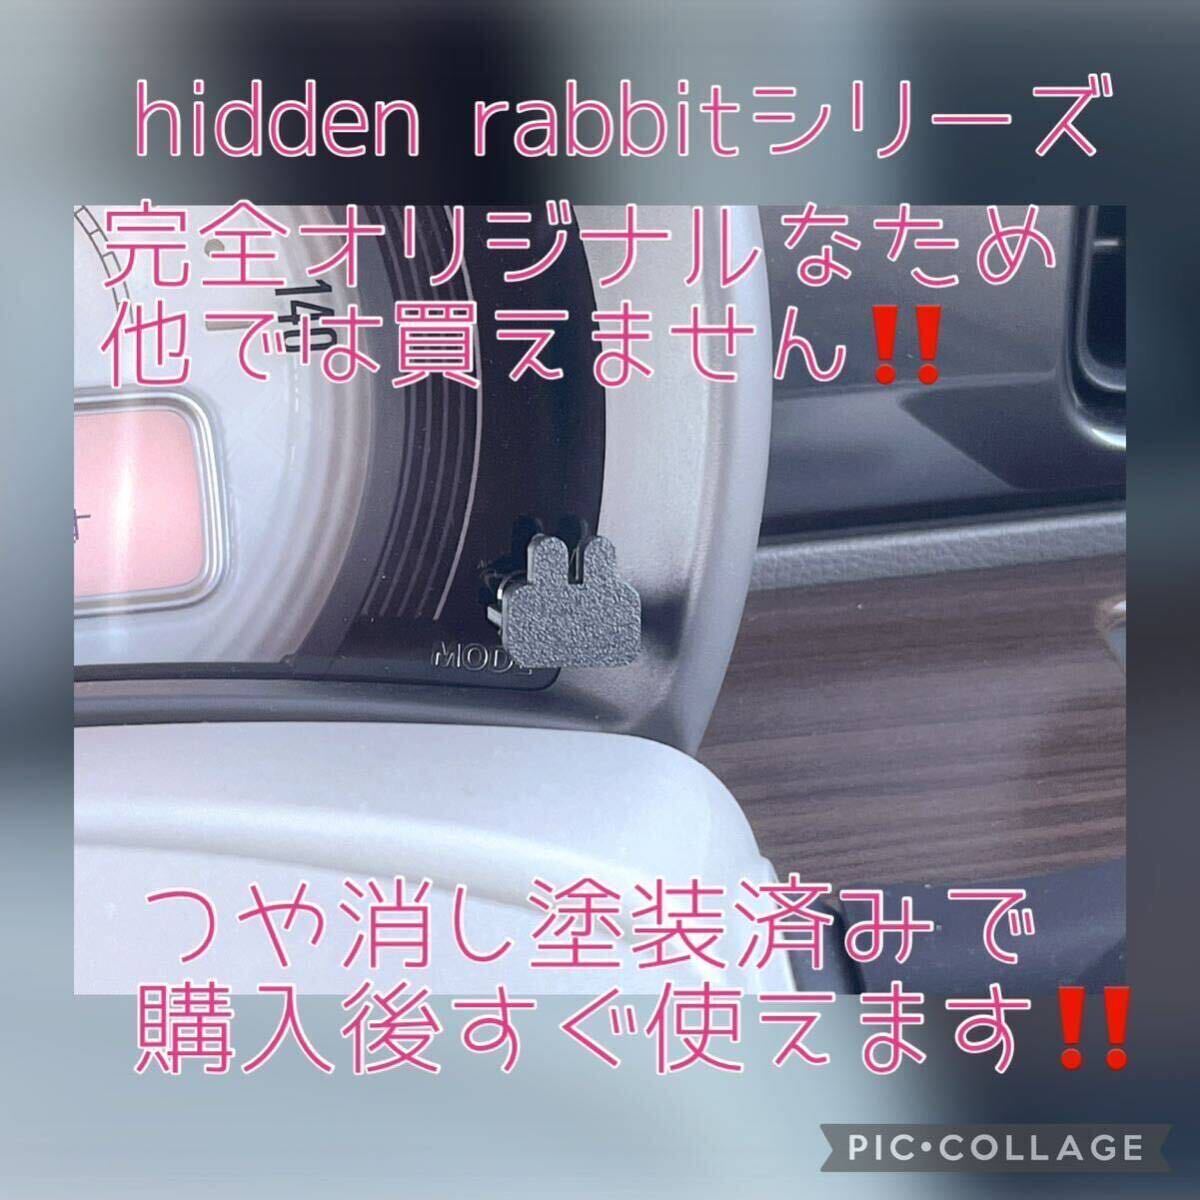 HE33Sラパン/ラパンLC専用うさぎトリップメーターキャップ2個セット hidden rabbit 4